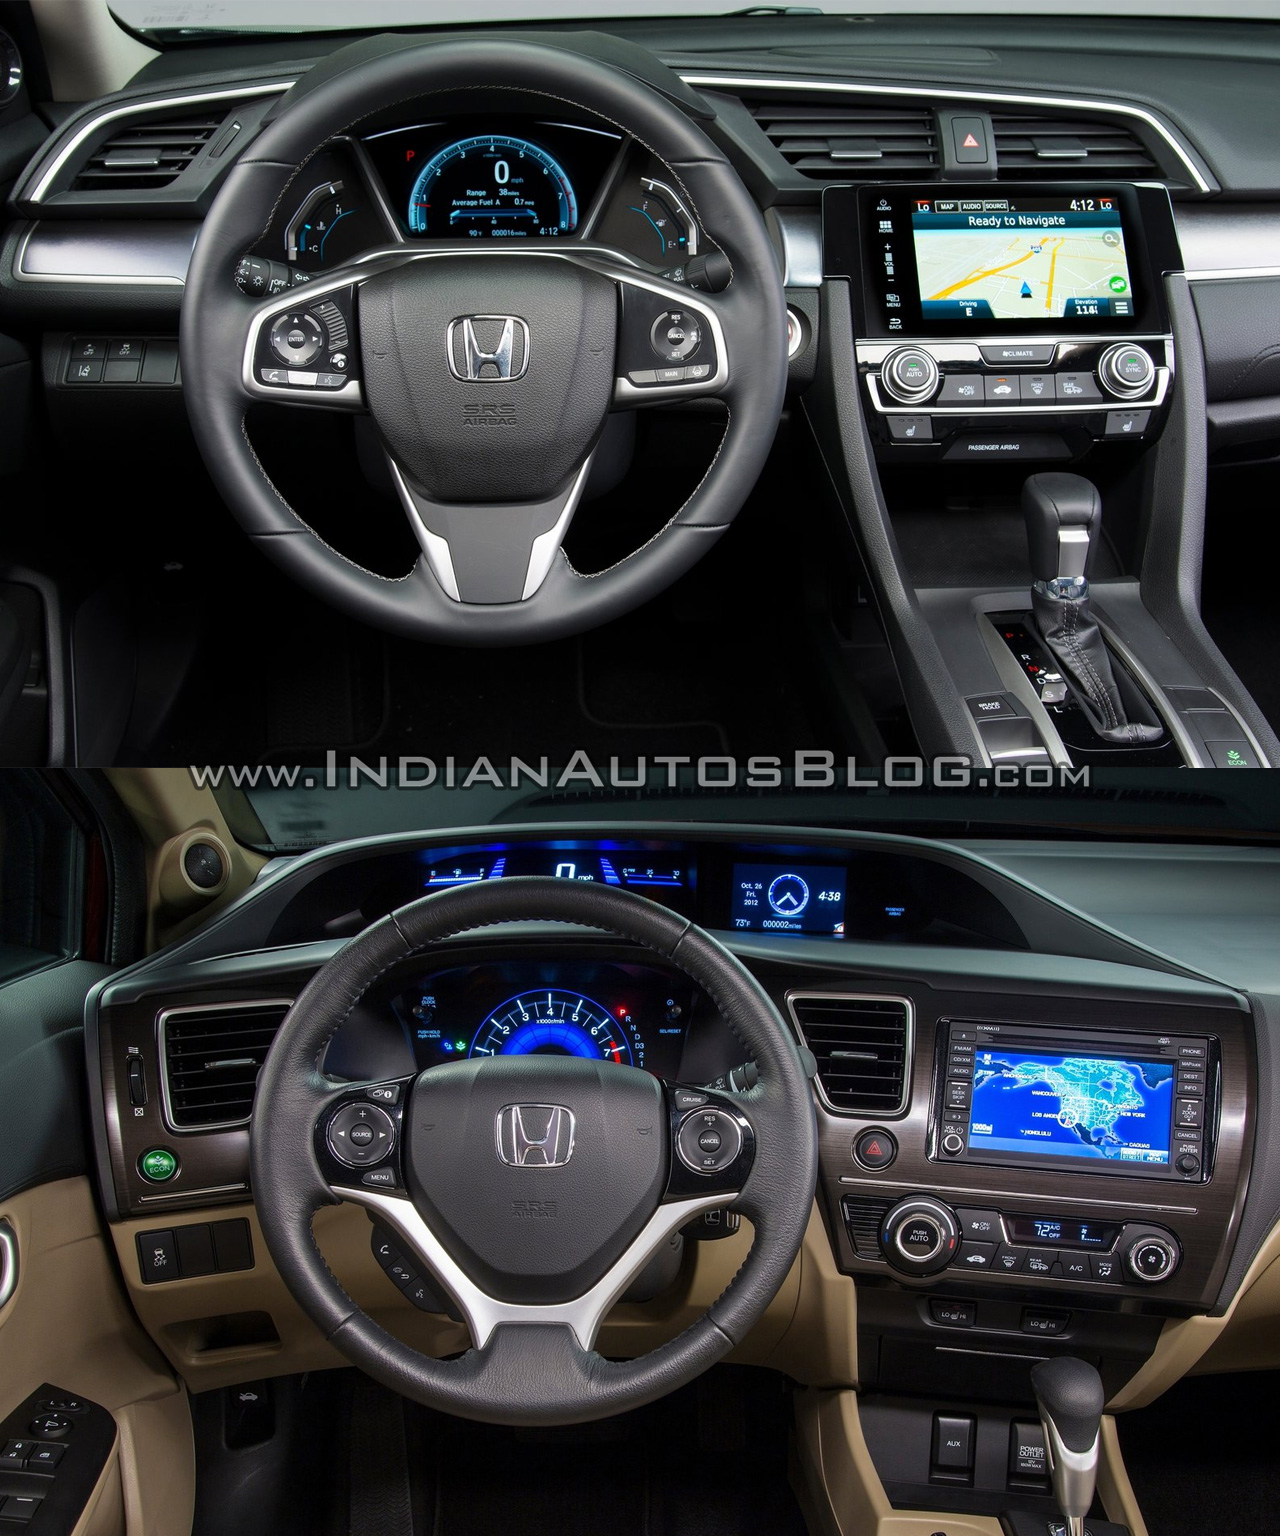 2016 Honda Civic Vs 2015 Honda Civic Old Vs New